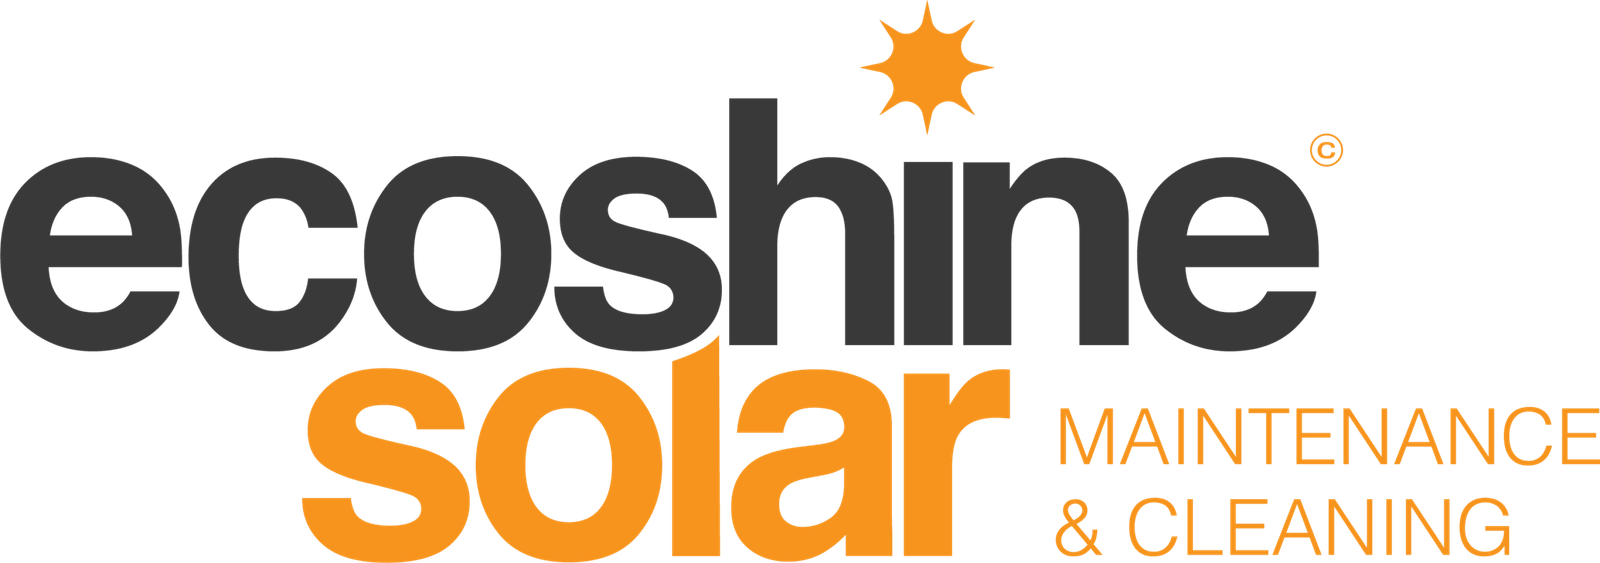 EcoShine Solar Maintenance & Cleaning Logo